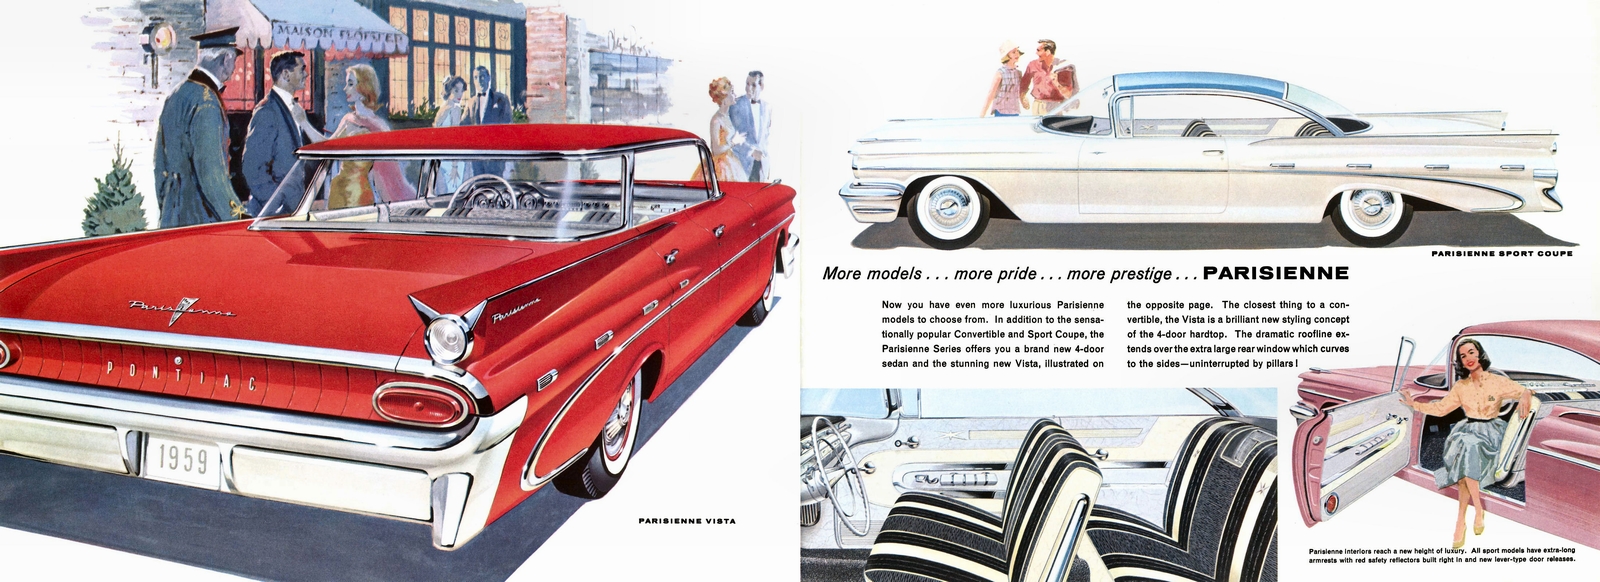 n_1959 Pontiac (Cdn)-04-05.jpg